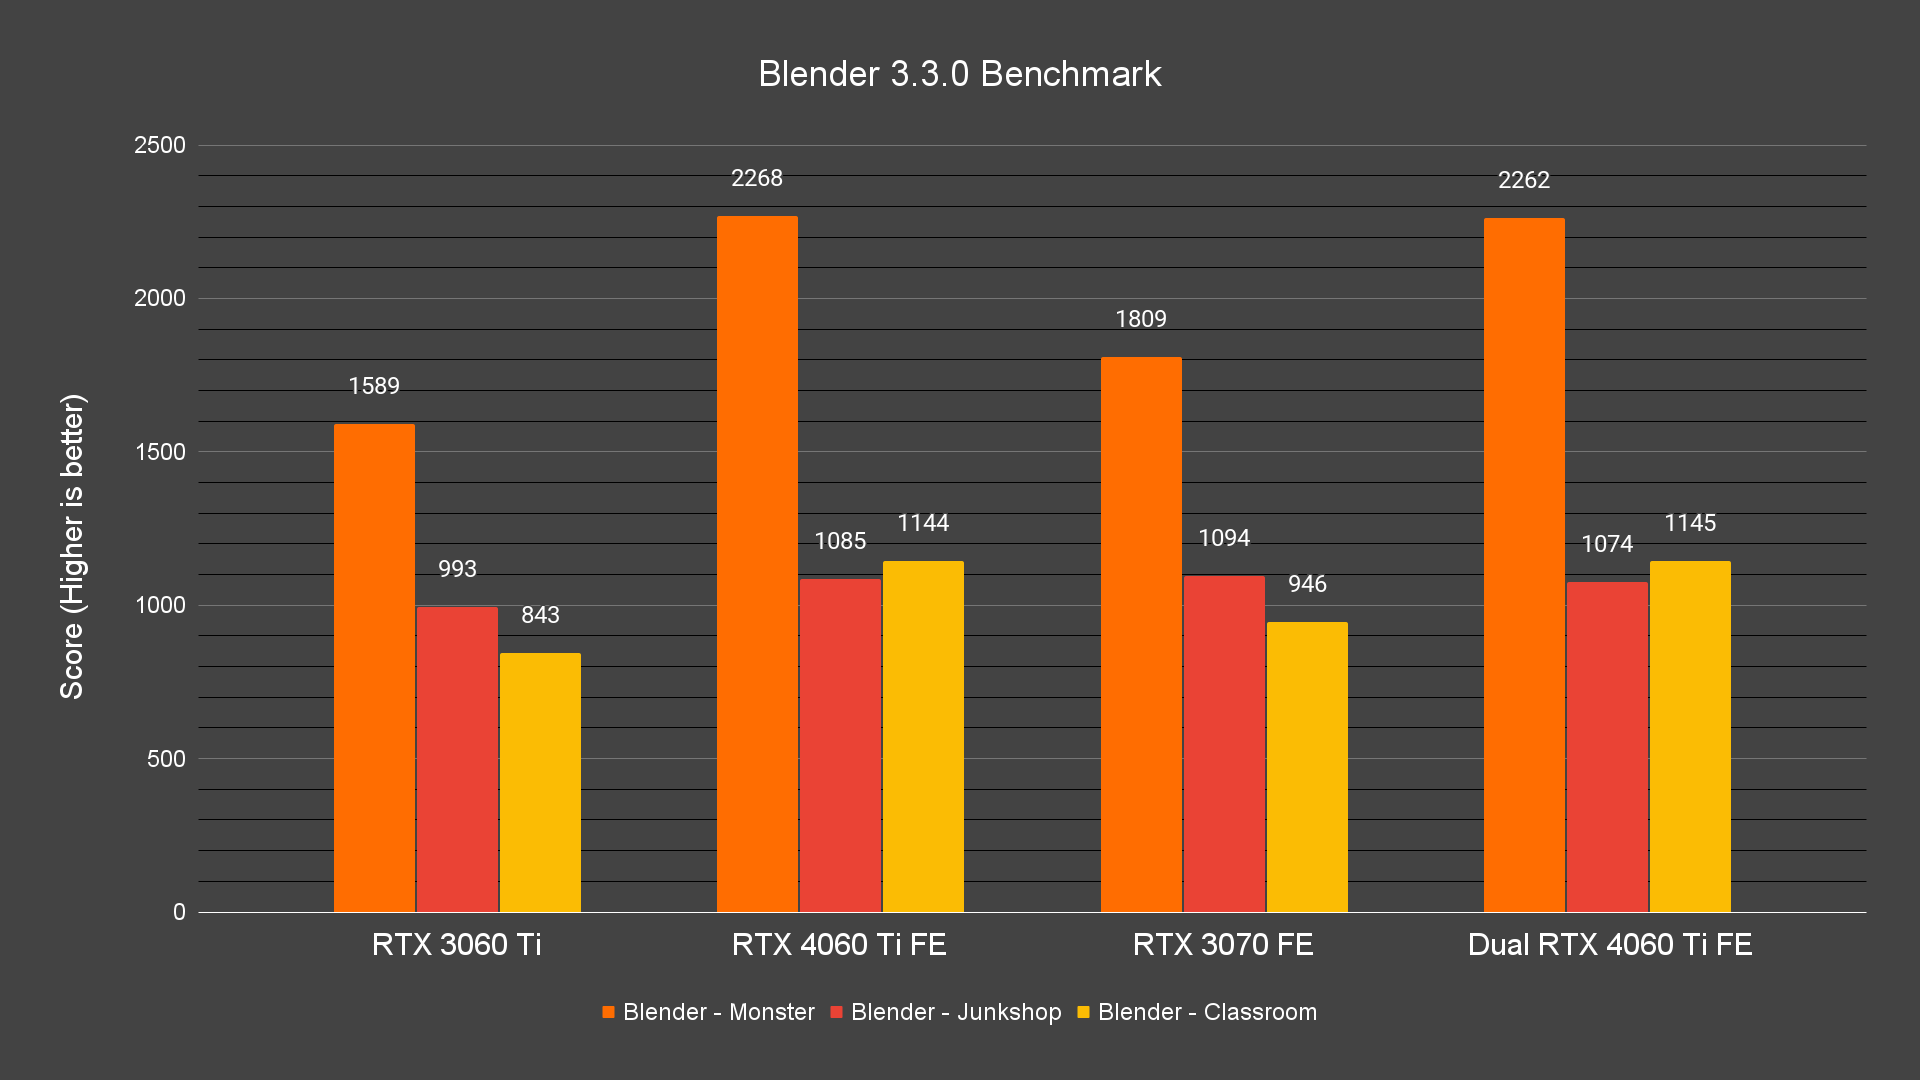 Blender 3.3.0 Benchmark